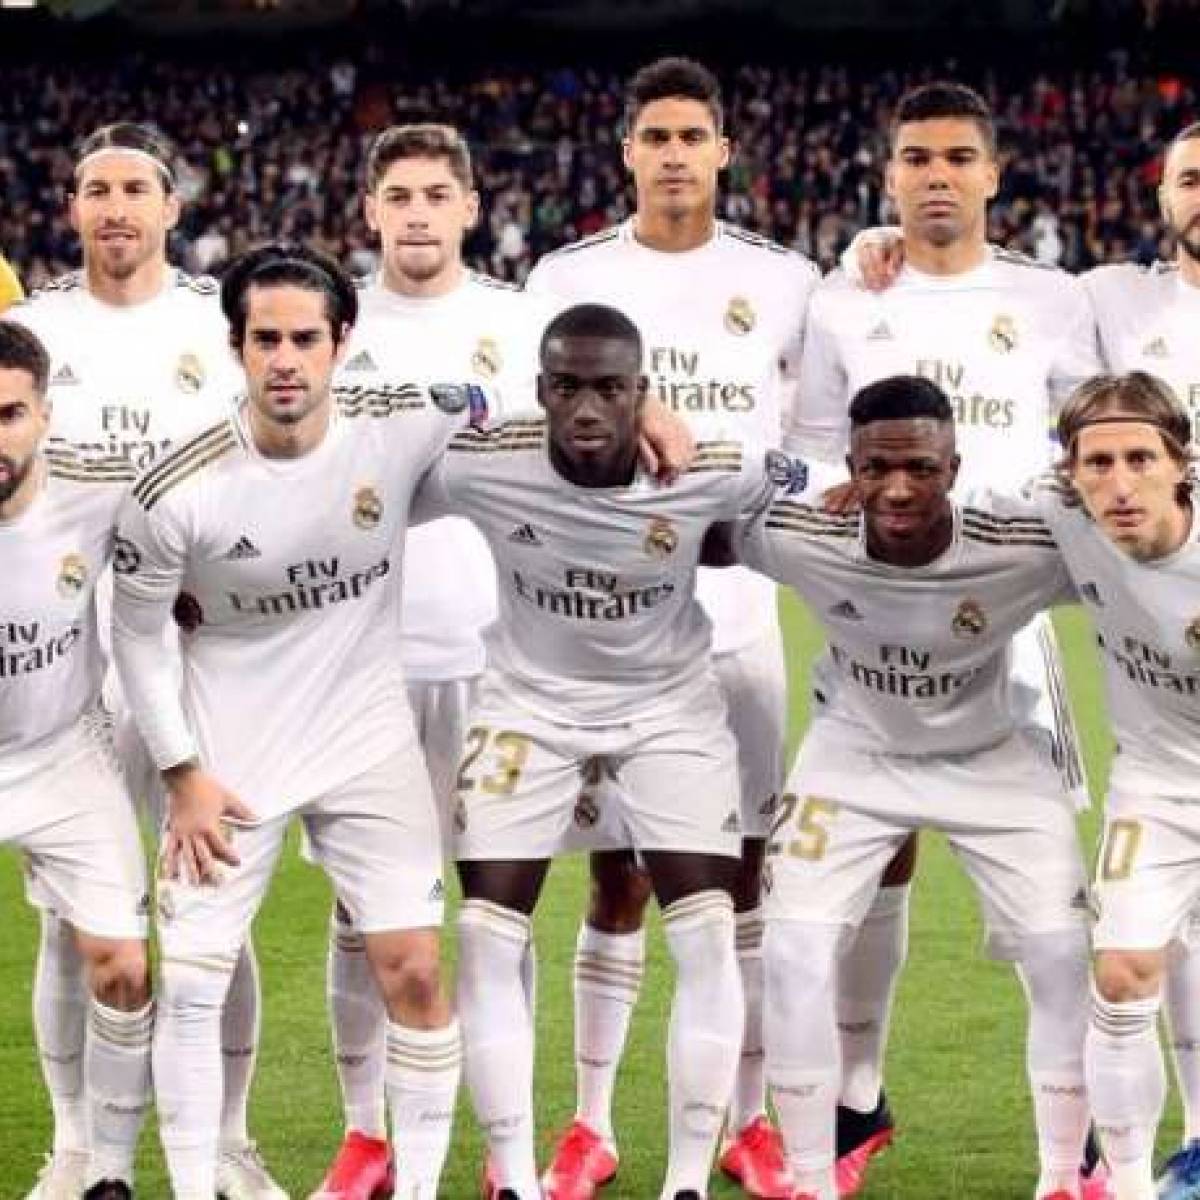 Real Sociedad-Madrid: Casemiro sur le banc, Odegaard titulaire, les compos officielles